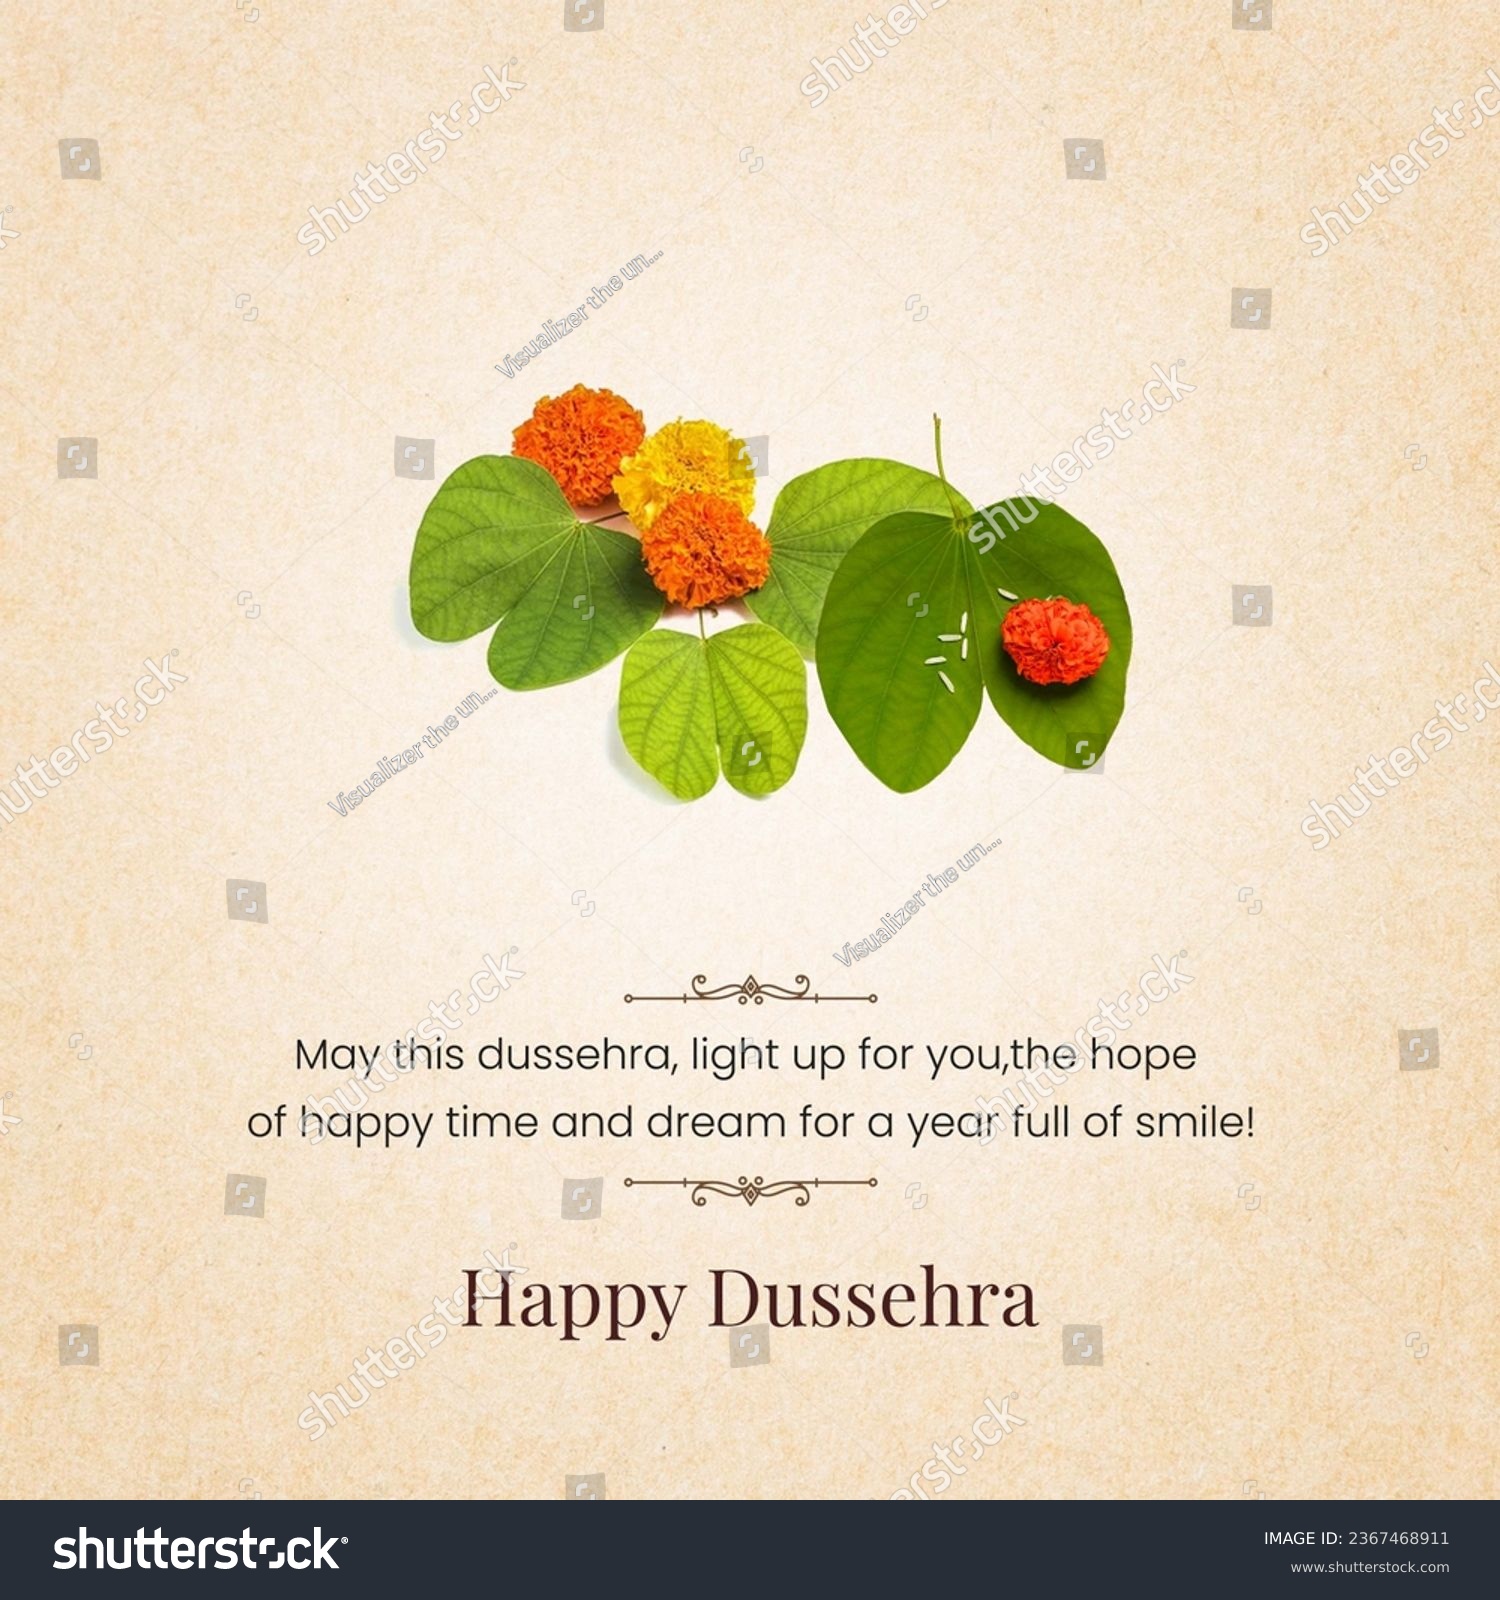 Happy Dussehra, Dussehra leaf, Happy Vijayadashmi #2367468911